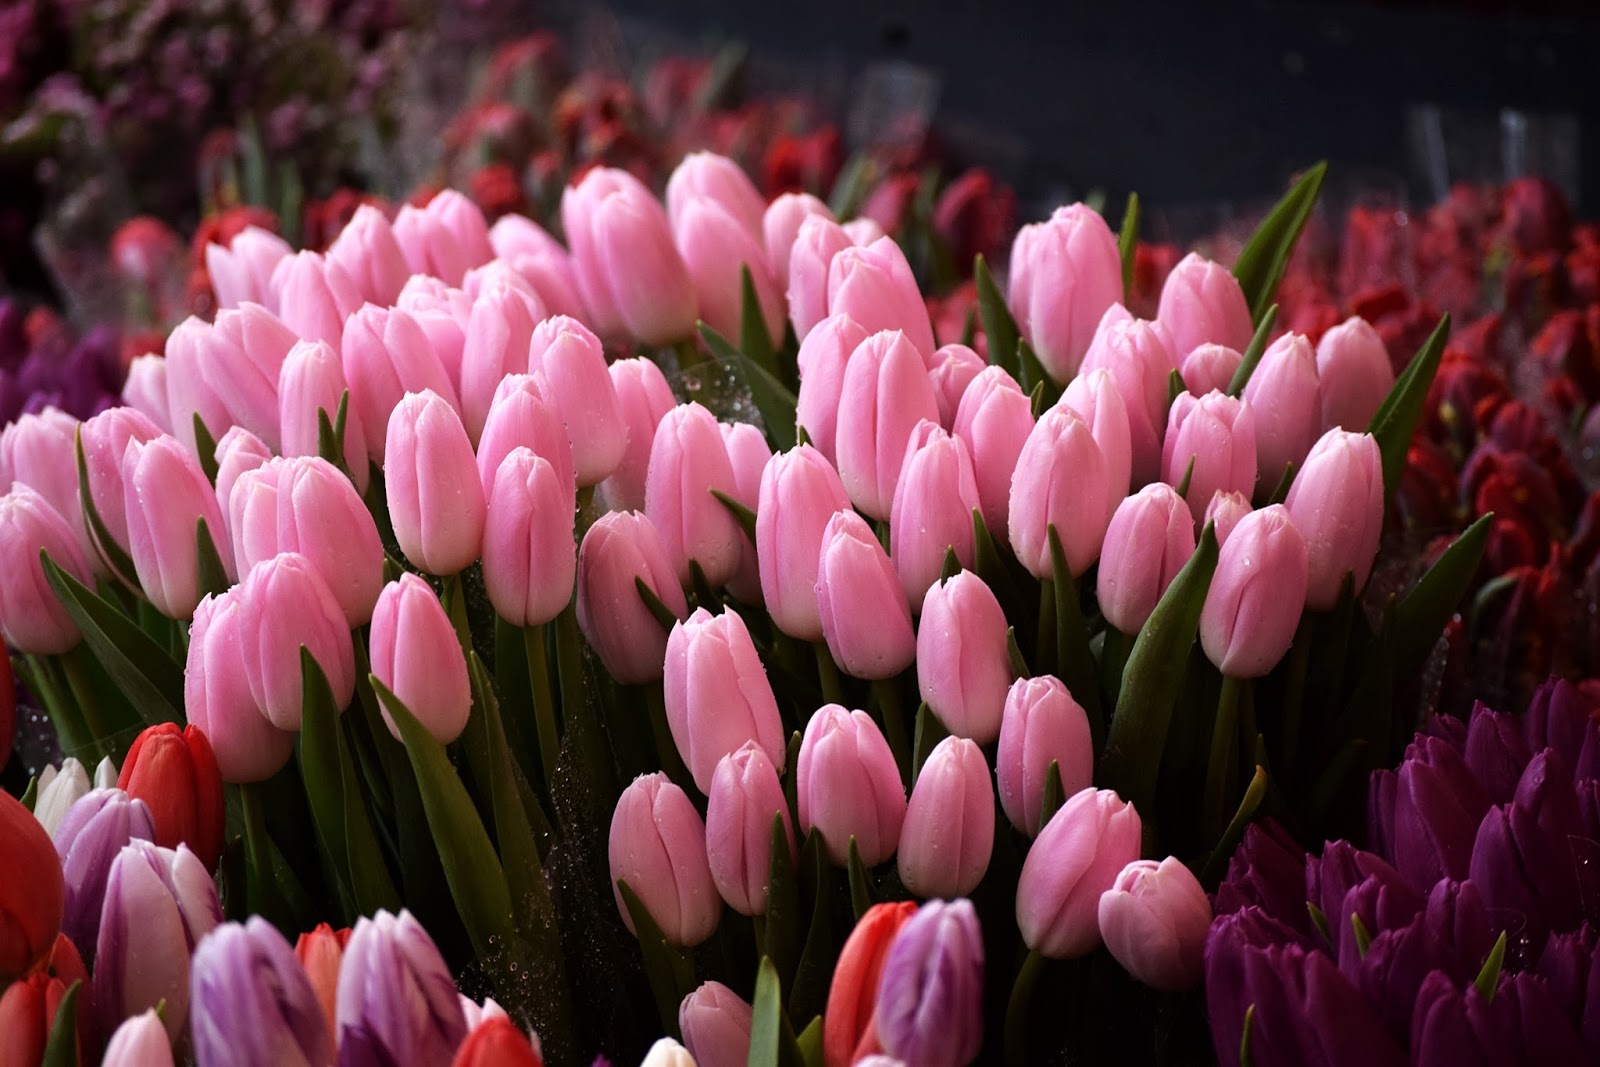 Beautiful tulips of Torvehallerne market, Copenhagen